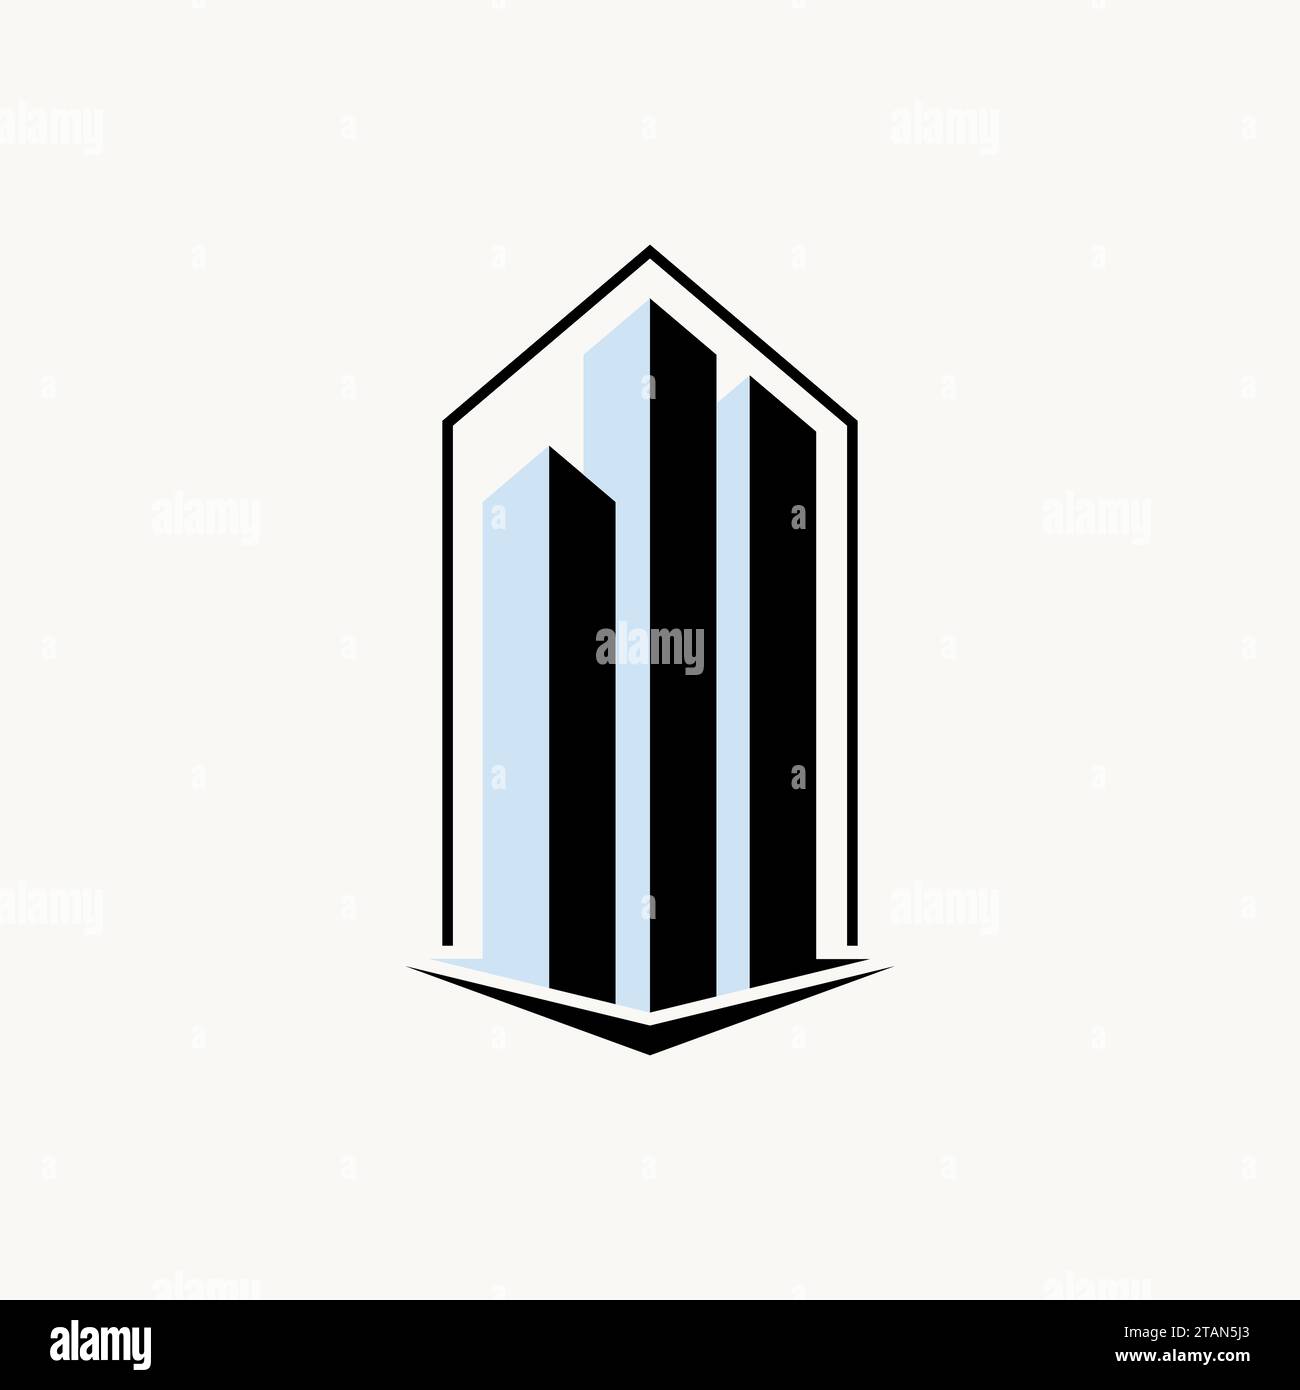 Logo Design Grafikkonzept kreatives Premium abstraktes Vektorzeichen einzigartiges Stock Sky Gebäude hohe Linie 3D Box. Zugehörige Wohnhausentwicklung Stock Vektor